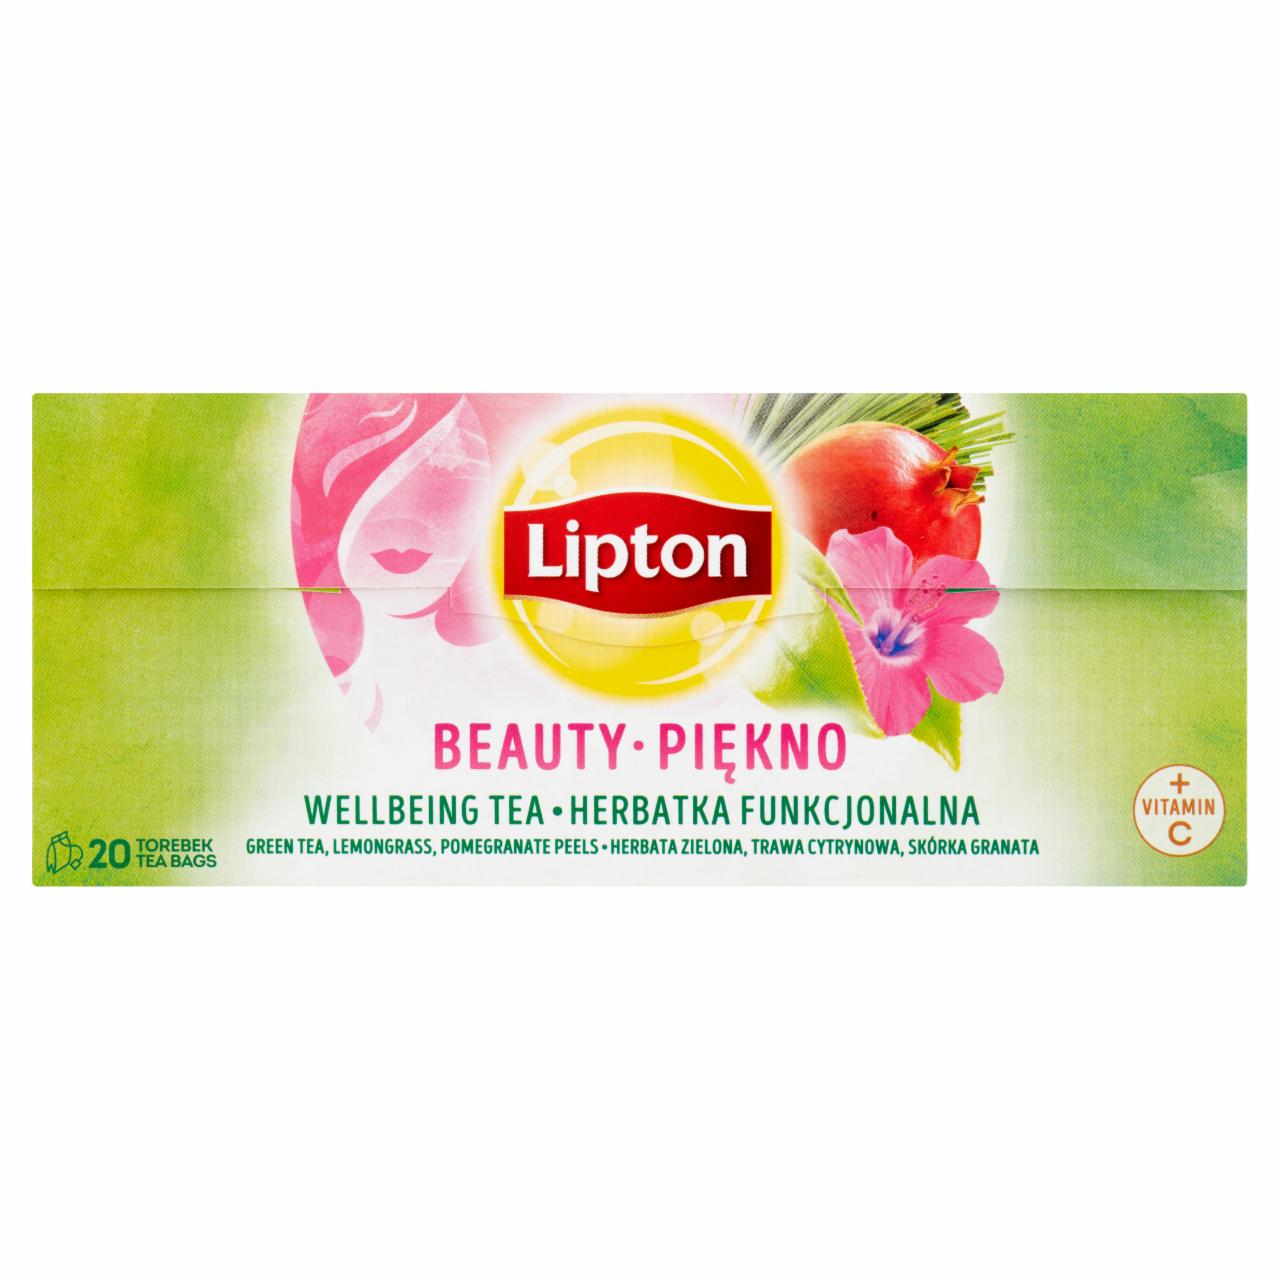 Zdjęcia - Lipton Piękno Herbatka funkcjonalna 32 g (20 torebek)